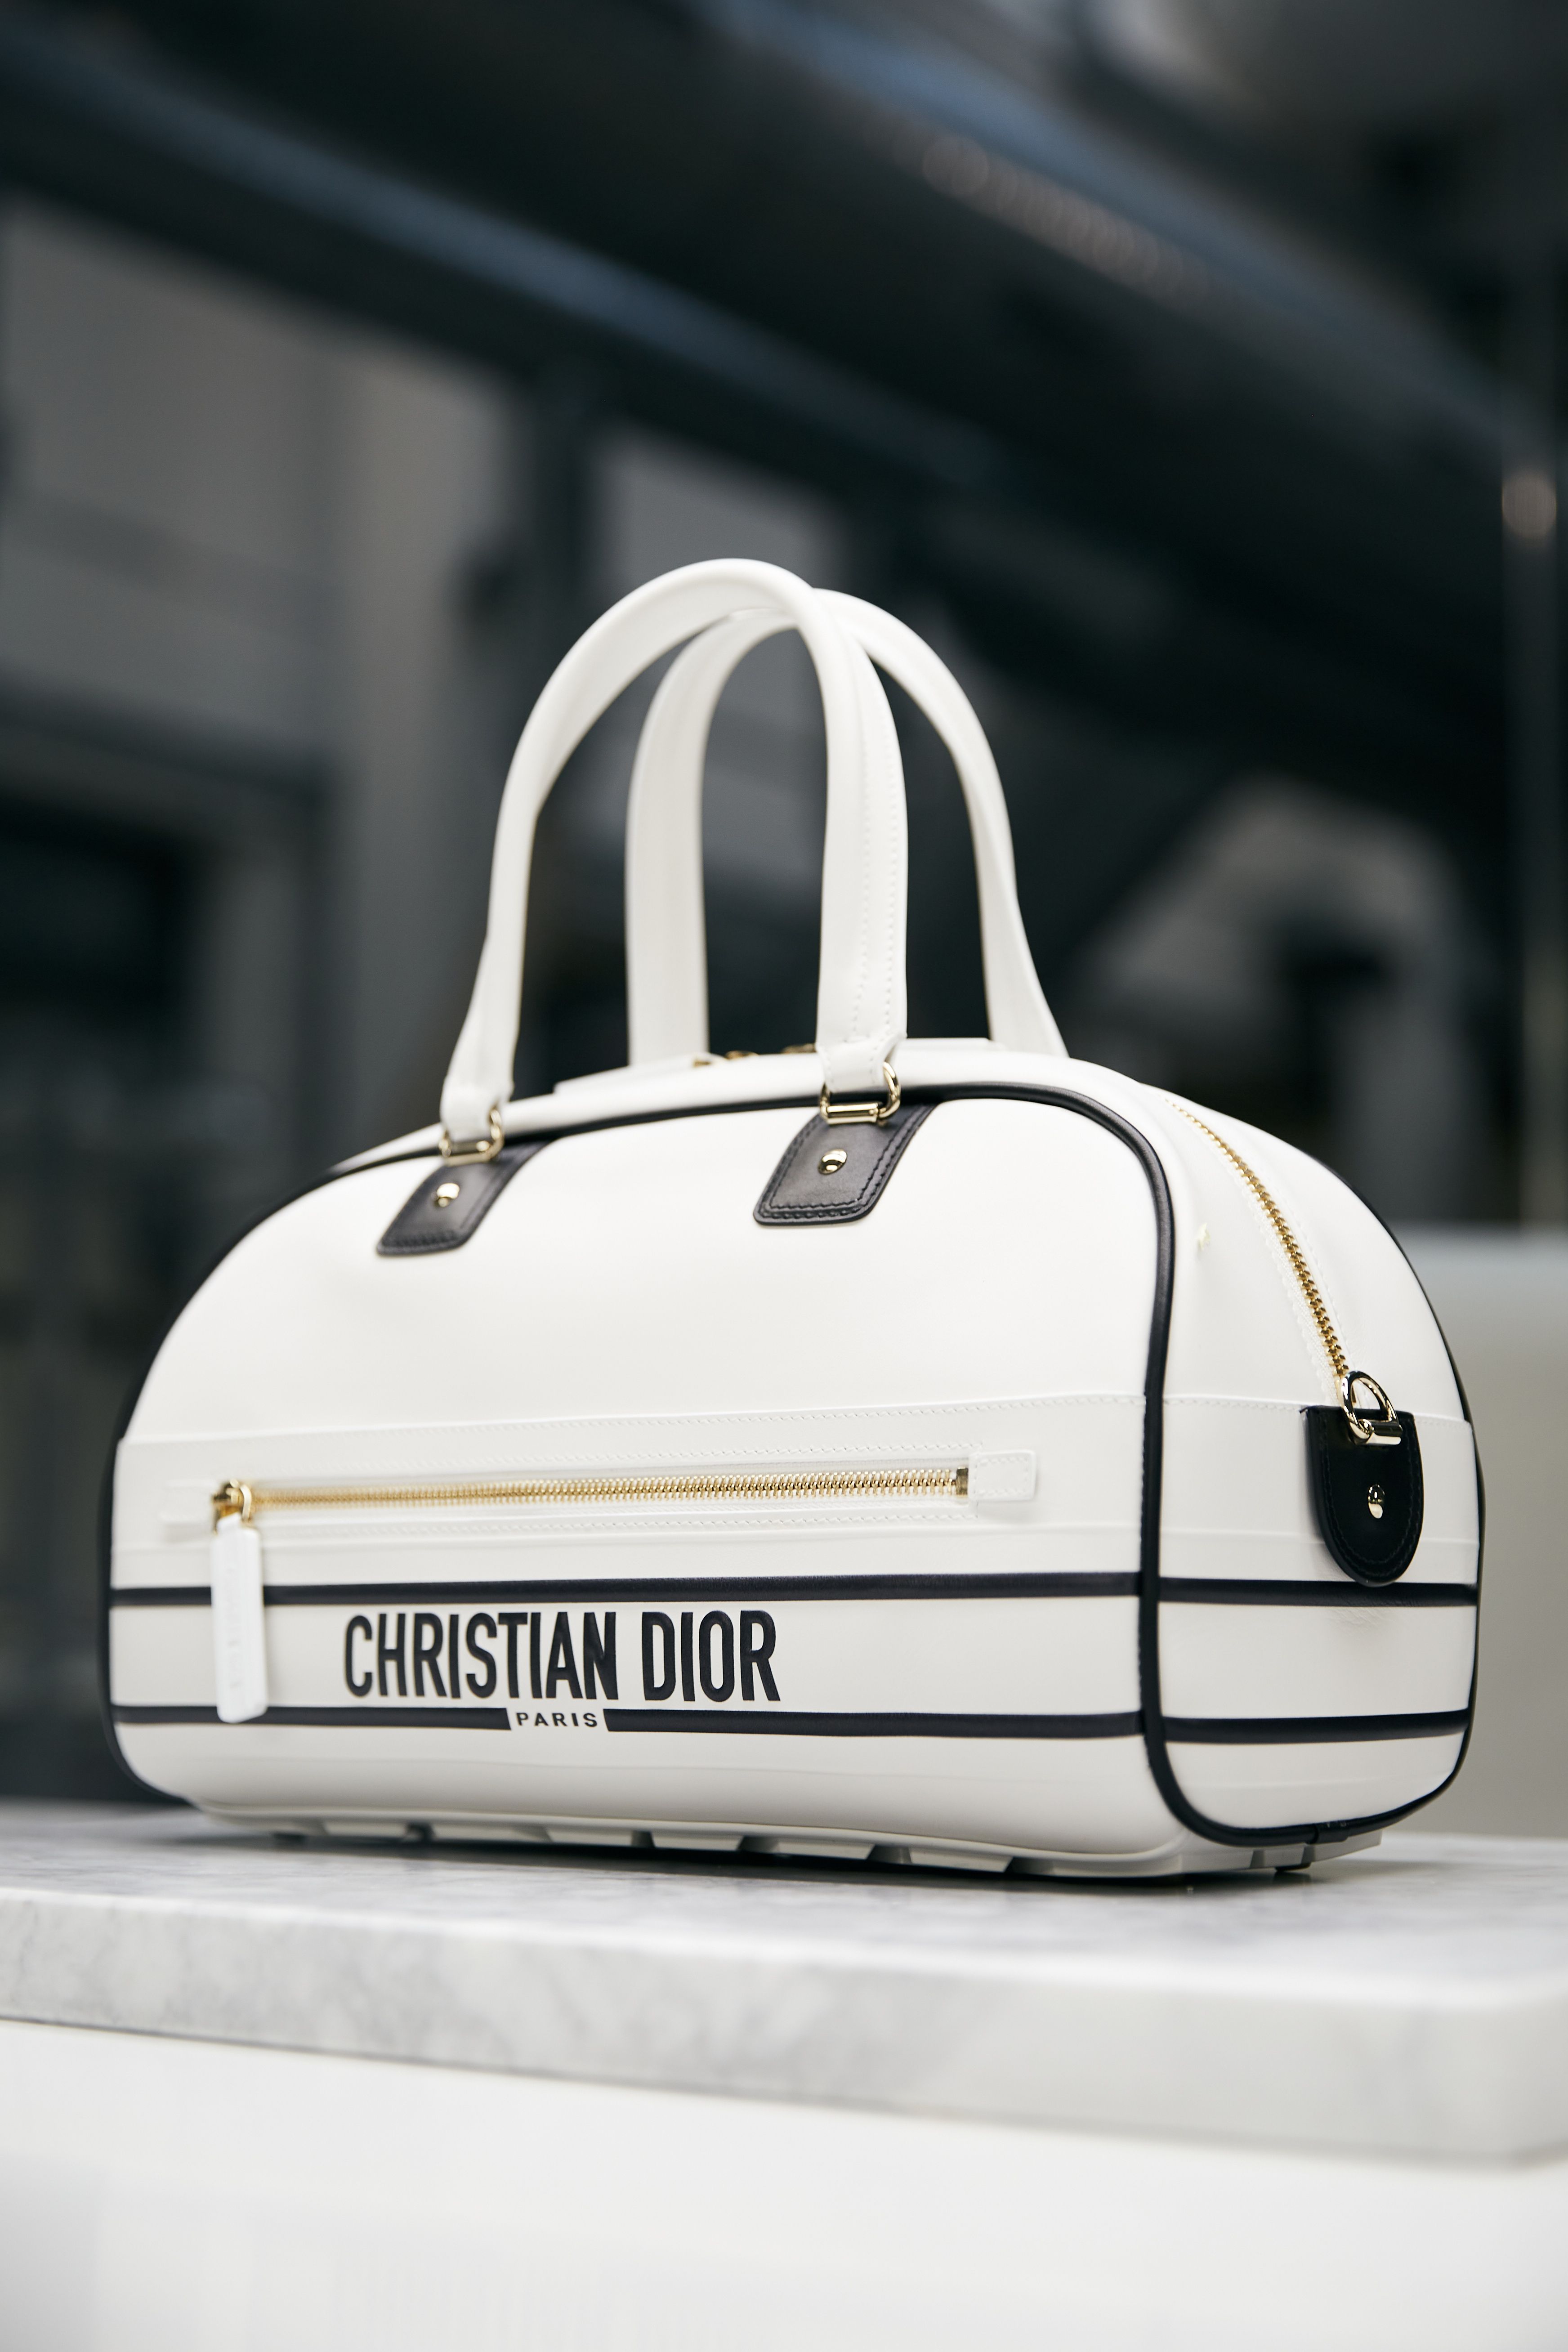 por favor confirmar Enemistarse Gracias El bolso de Dior que más va a arrasar en 2022